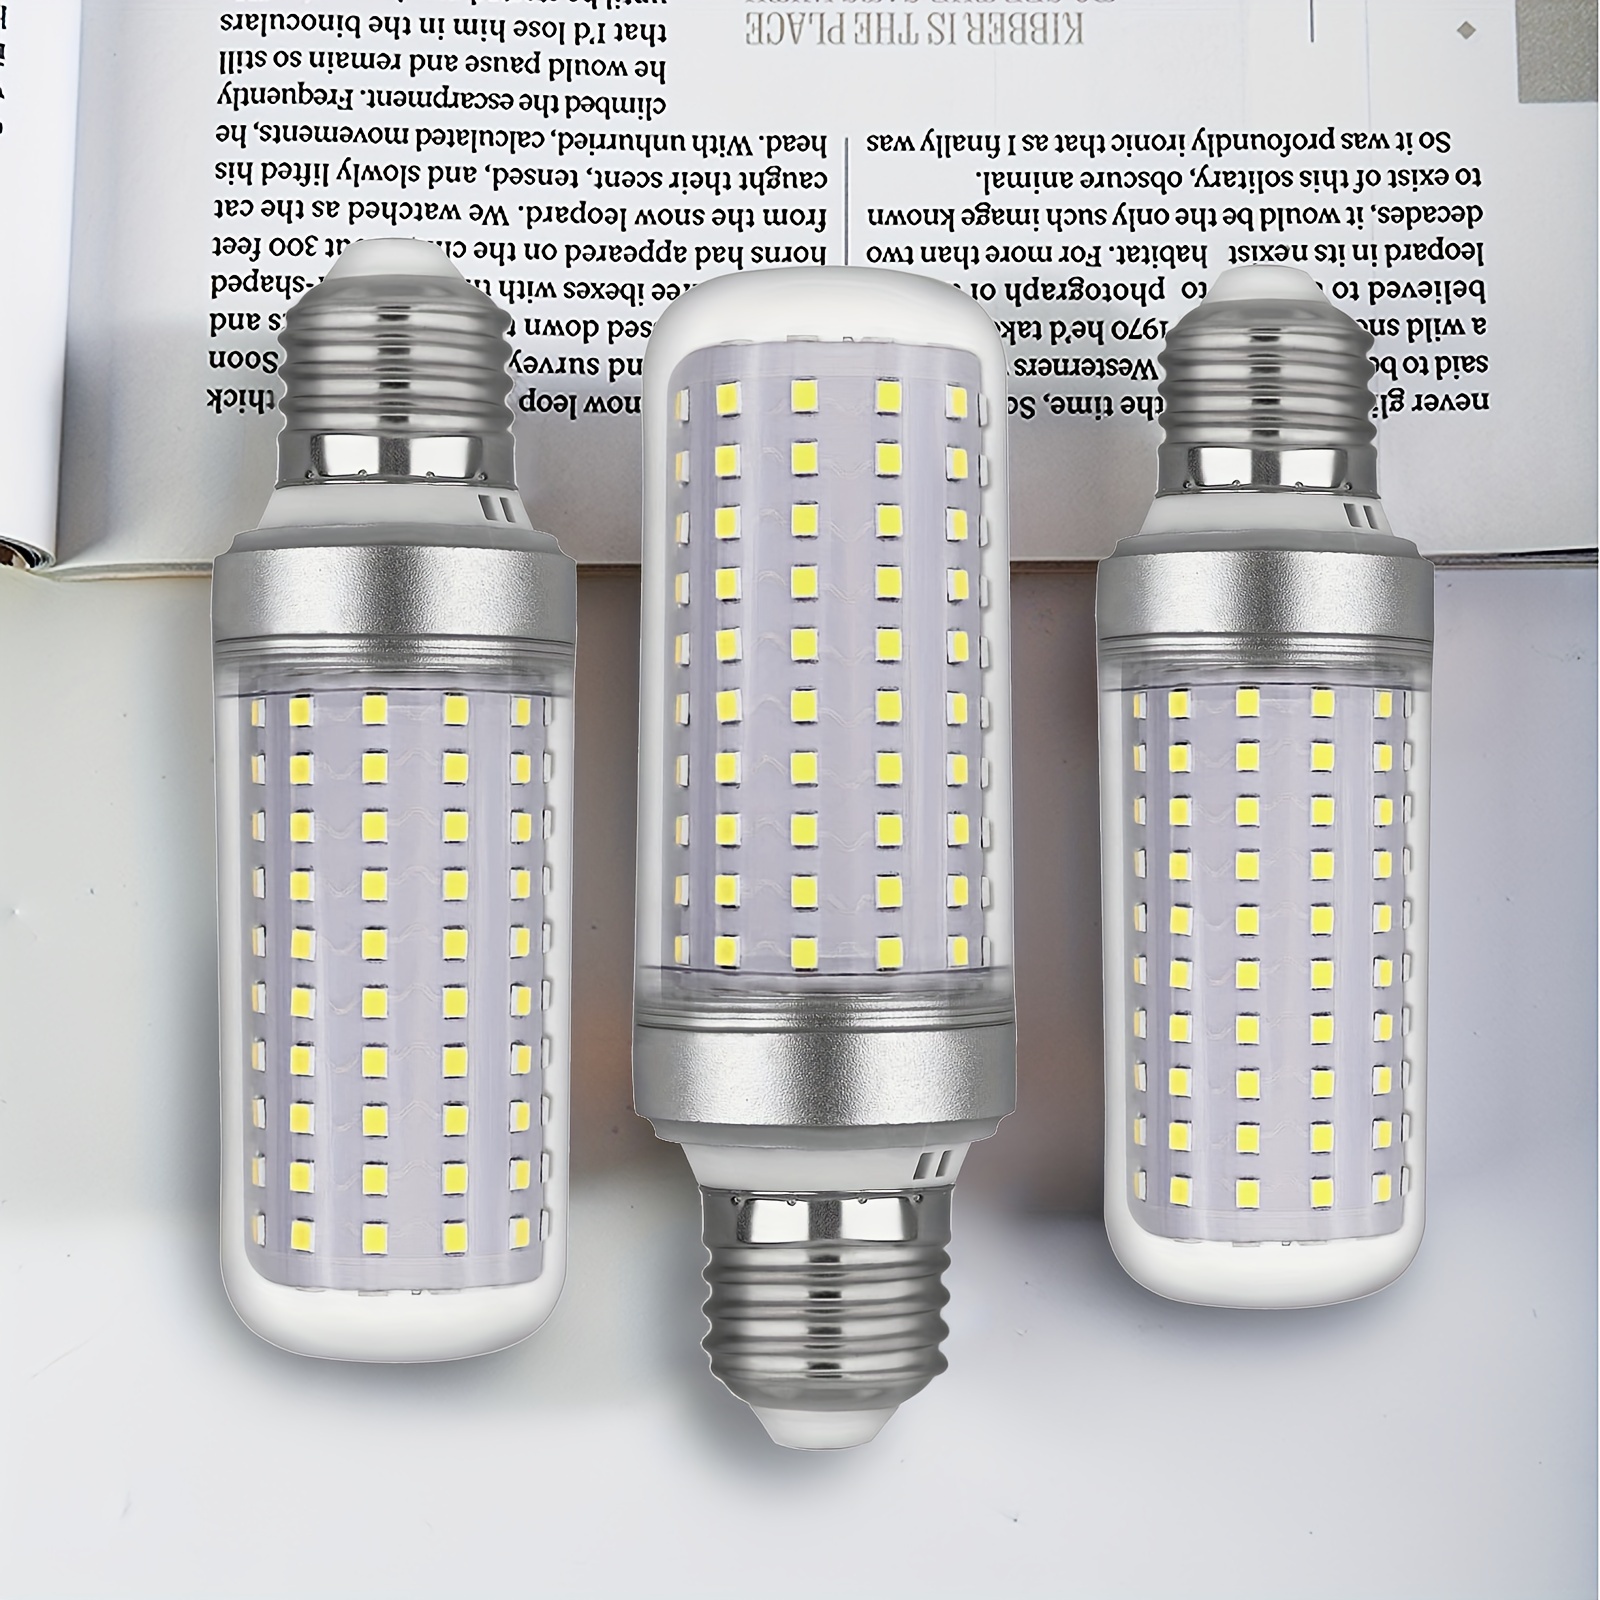 

Lot de 3 ampoules LED 30W, Culot Edison E27, Blanc lumière du jour 6000K, 3000Lm, équivalent à 250W pour les ampoules incandescentes, Non dimmable